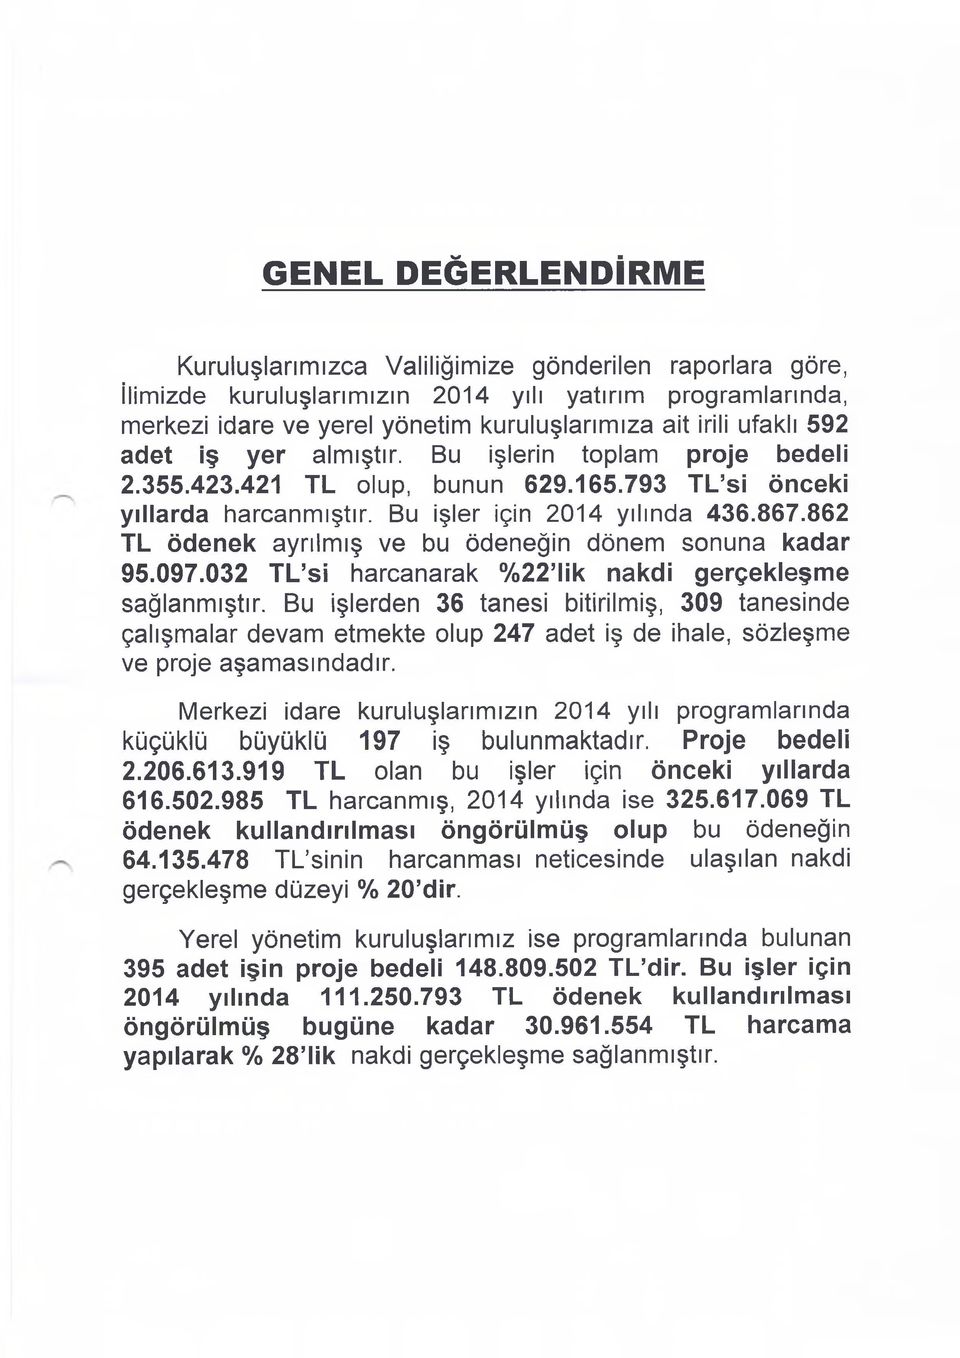 862 TL ödenek ayrılmış bu ödeneğin dönem sonuna kadar 95.097.032 T L si harcanarak %22 lik nakdi gerçekleşme sağlanmıştır.